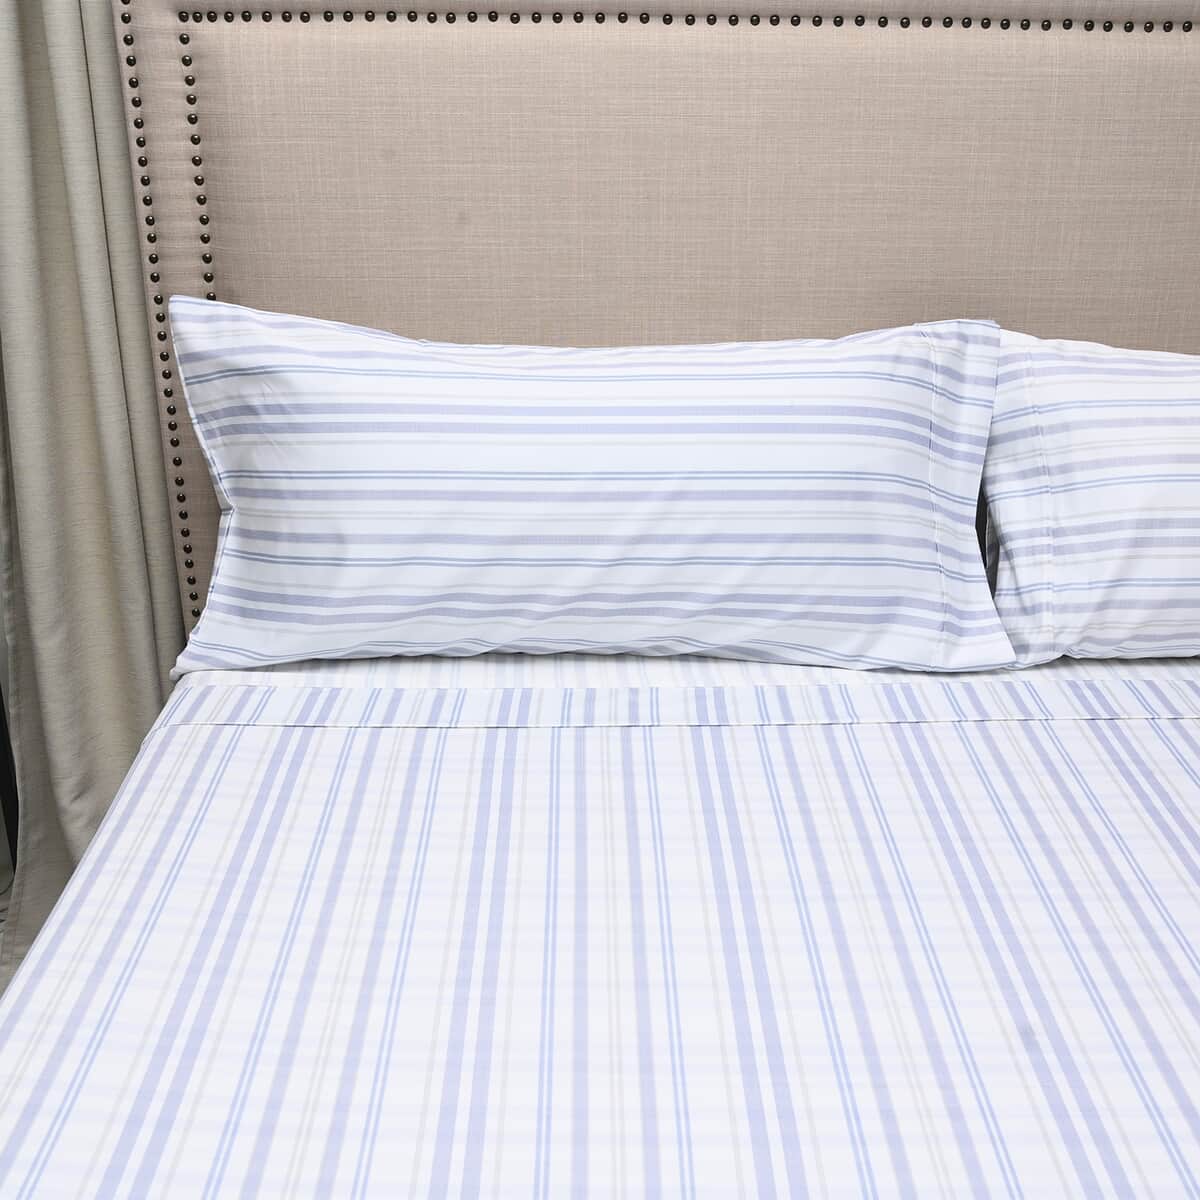 Master Suite White, Navy Striped 500TC 100% Cotton Sheet Set -King | Bedsheet Set | Bed Cover Set | Bedding Set | Bedspread image number 2